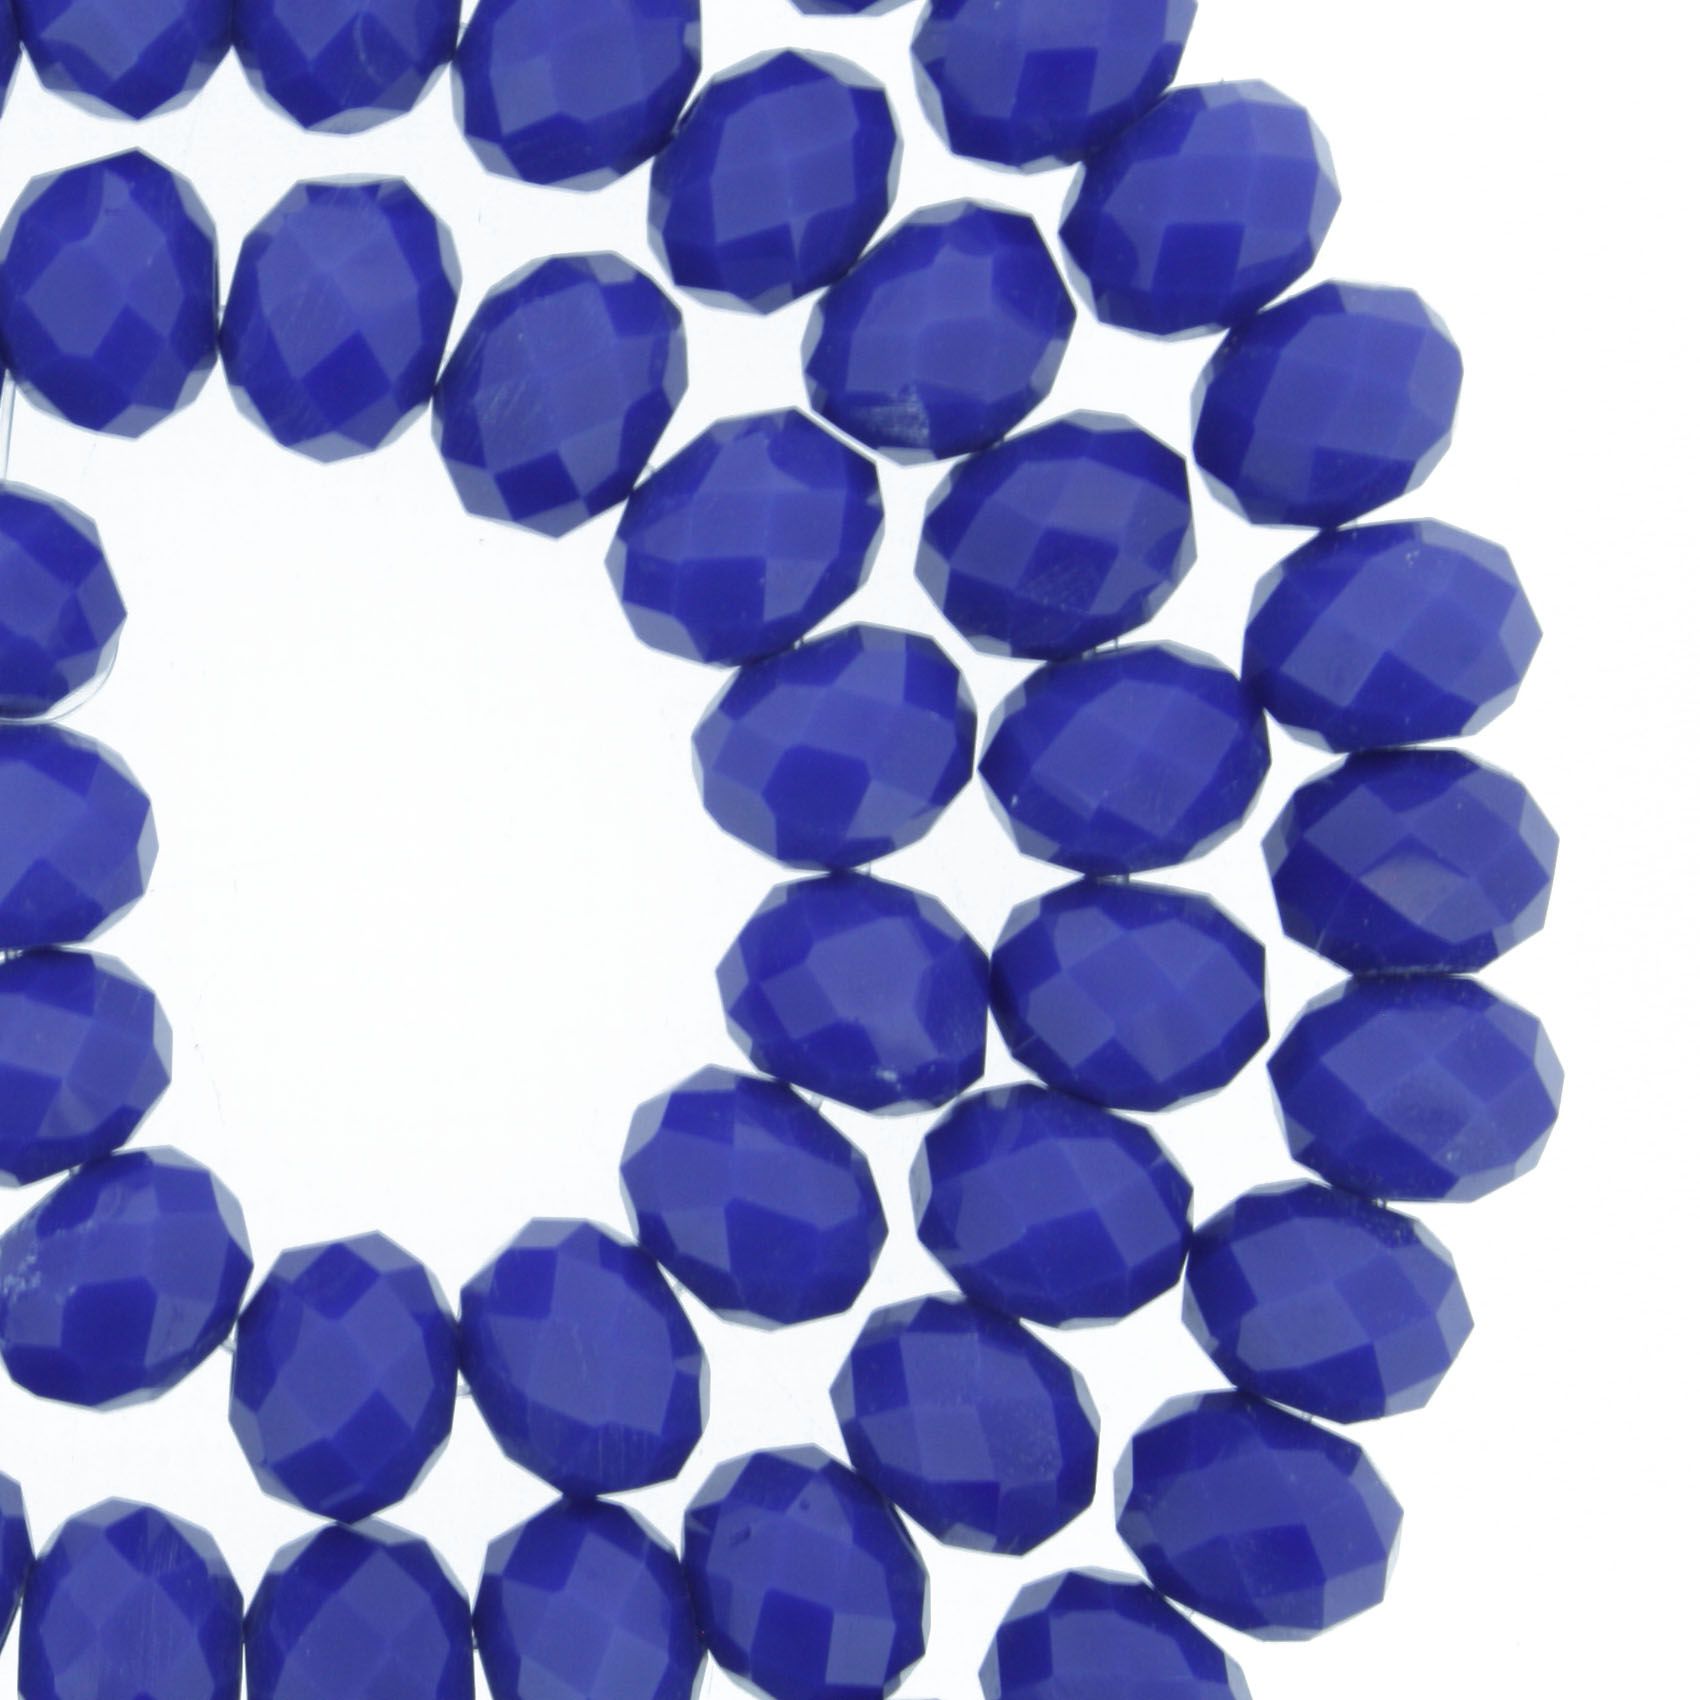 Fio de Cristal - Flat® - Azul Royal - 8mm - Stéphanie Bijoux® - Peças para Bijuterias e Artesanato